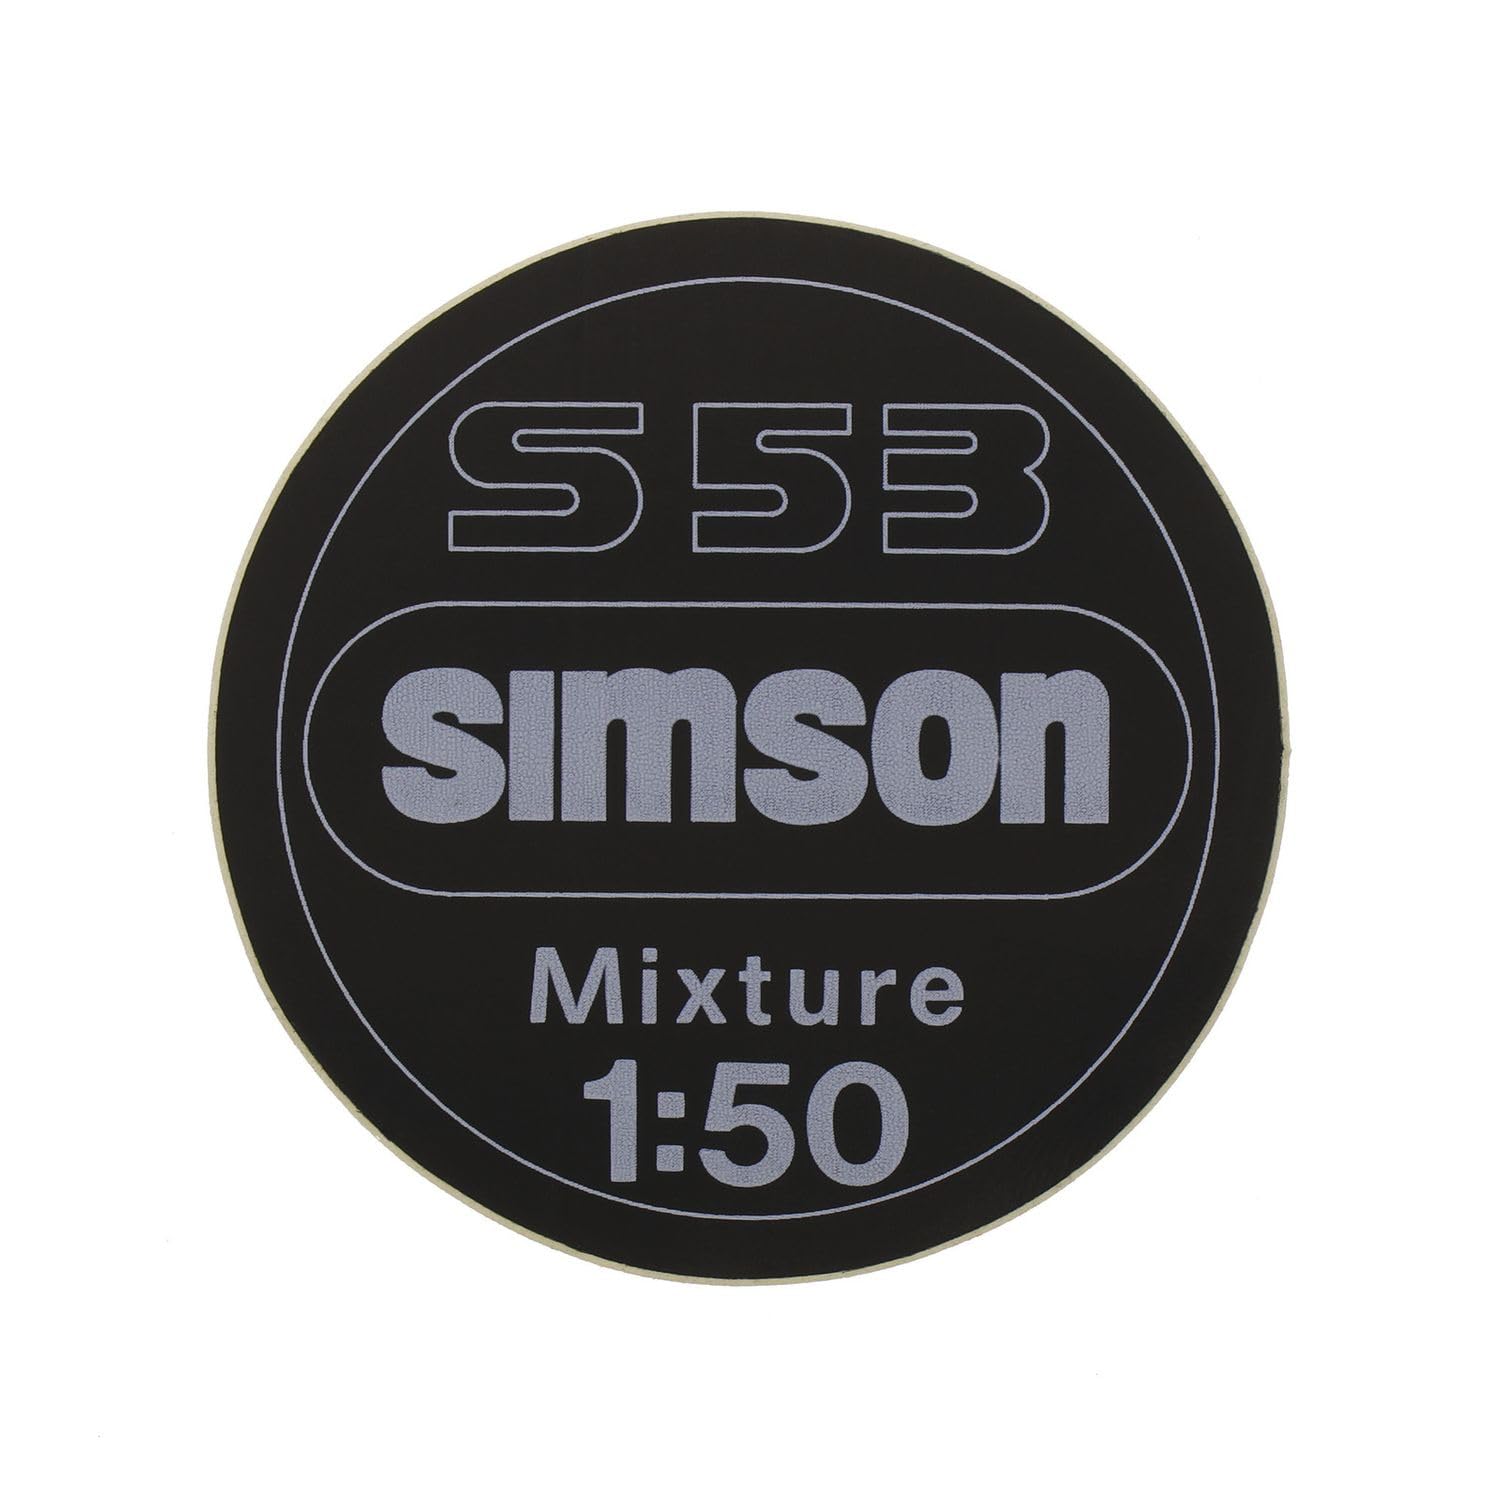 Klebefolie, Aufkleber 1:50 Mixture für Armaturenträger SIMSON S53 von MZA